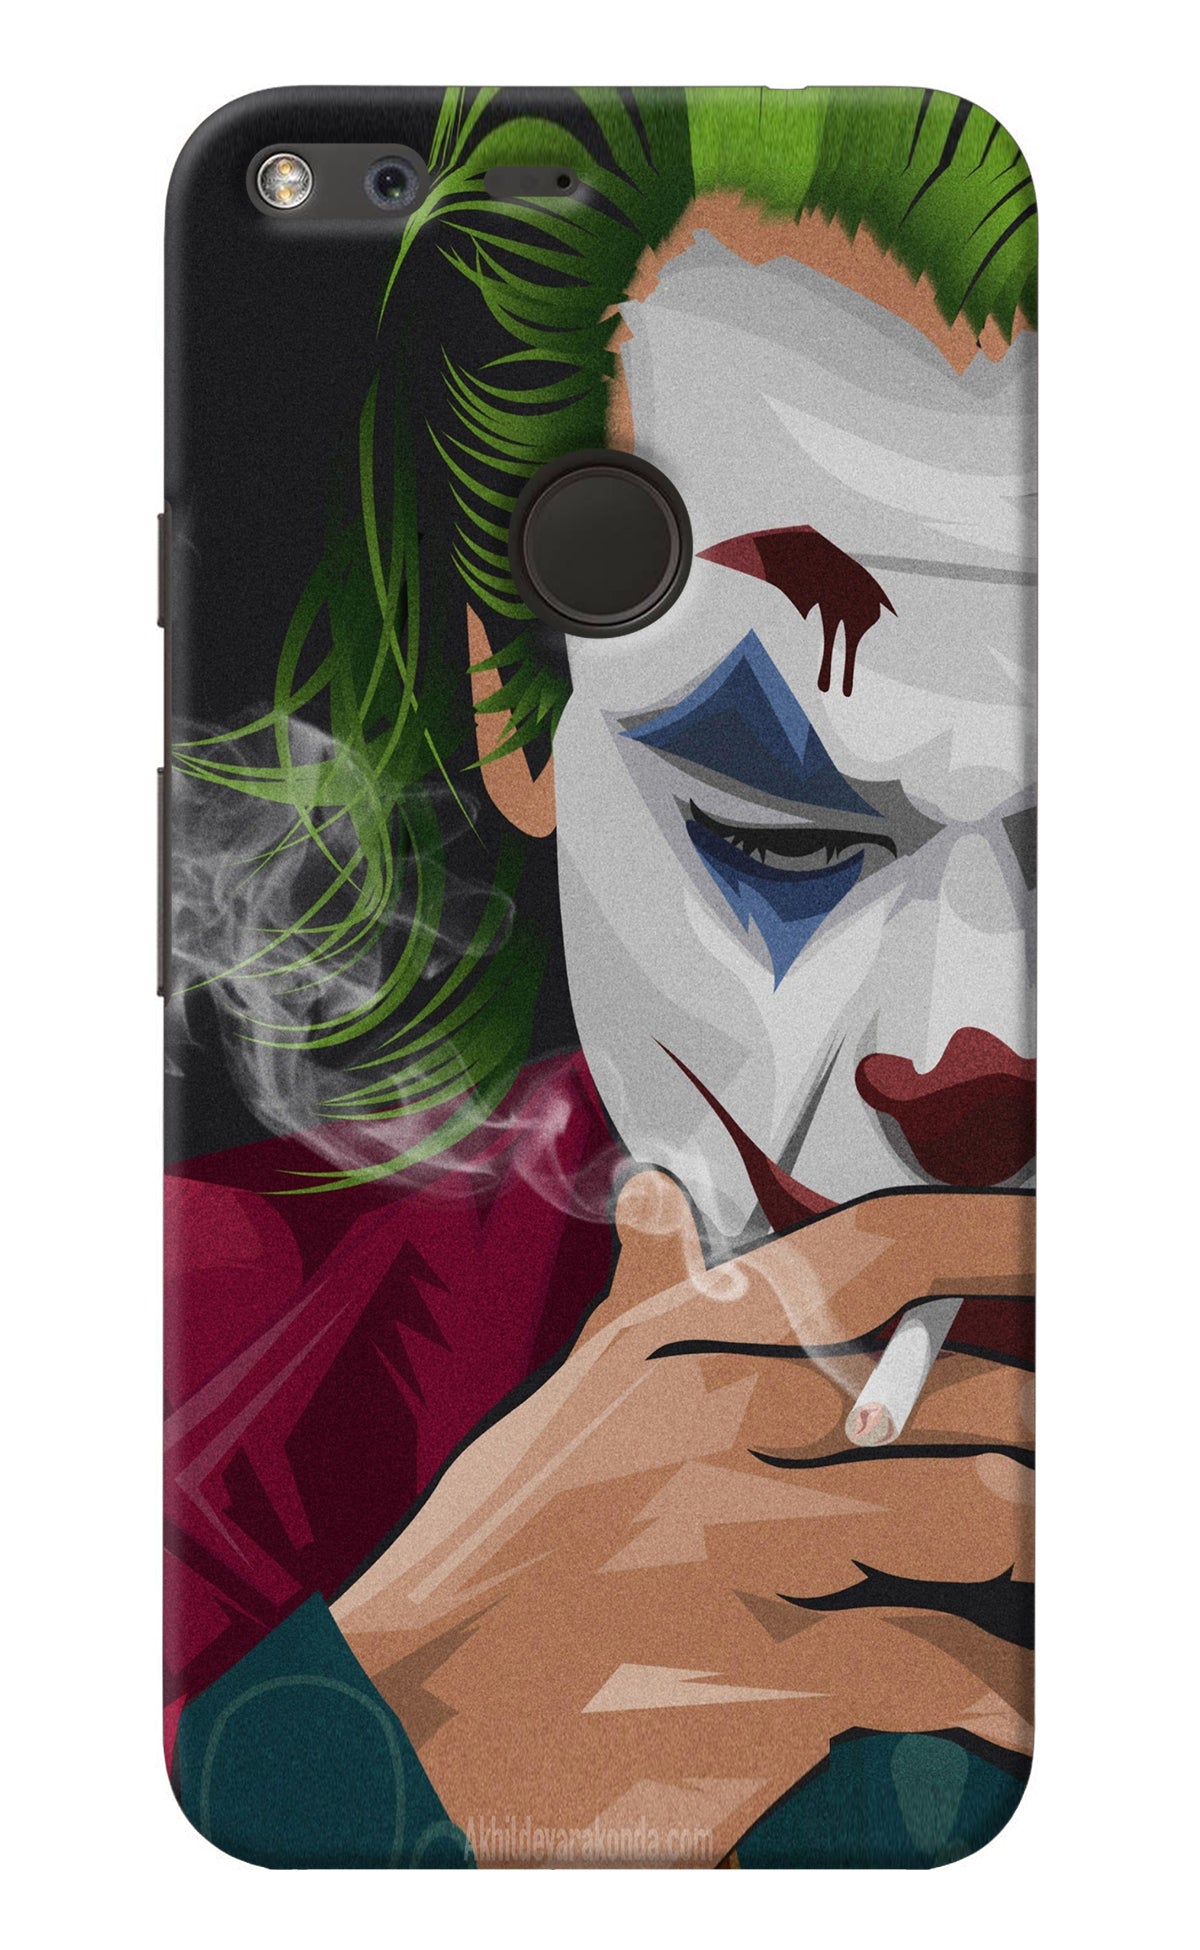 Joker Smoking Google Pixel Back Cover